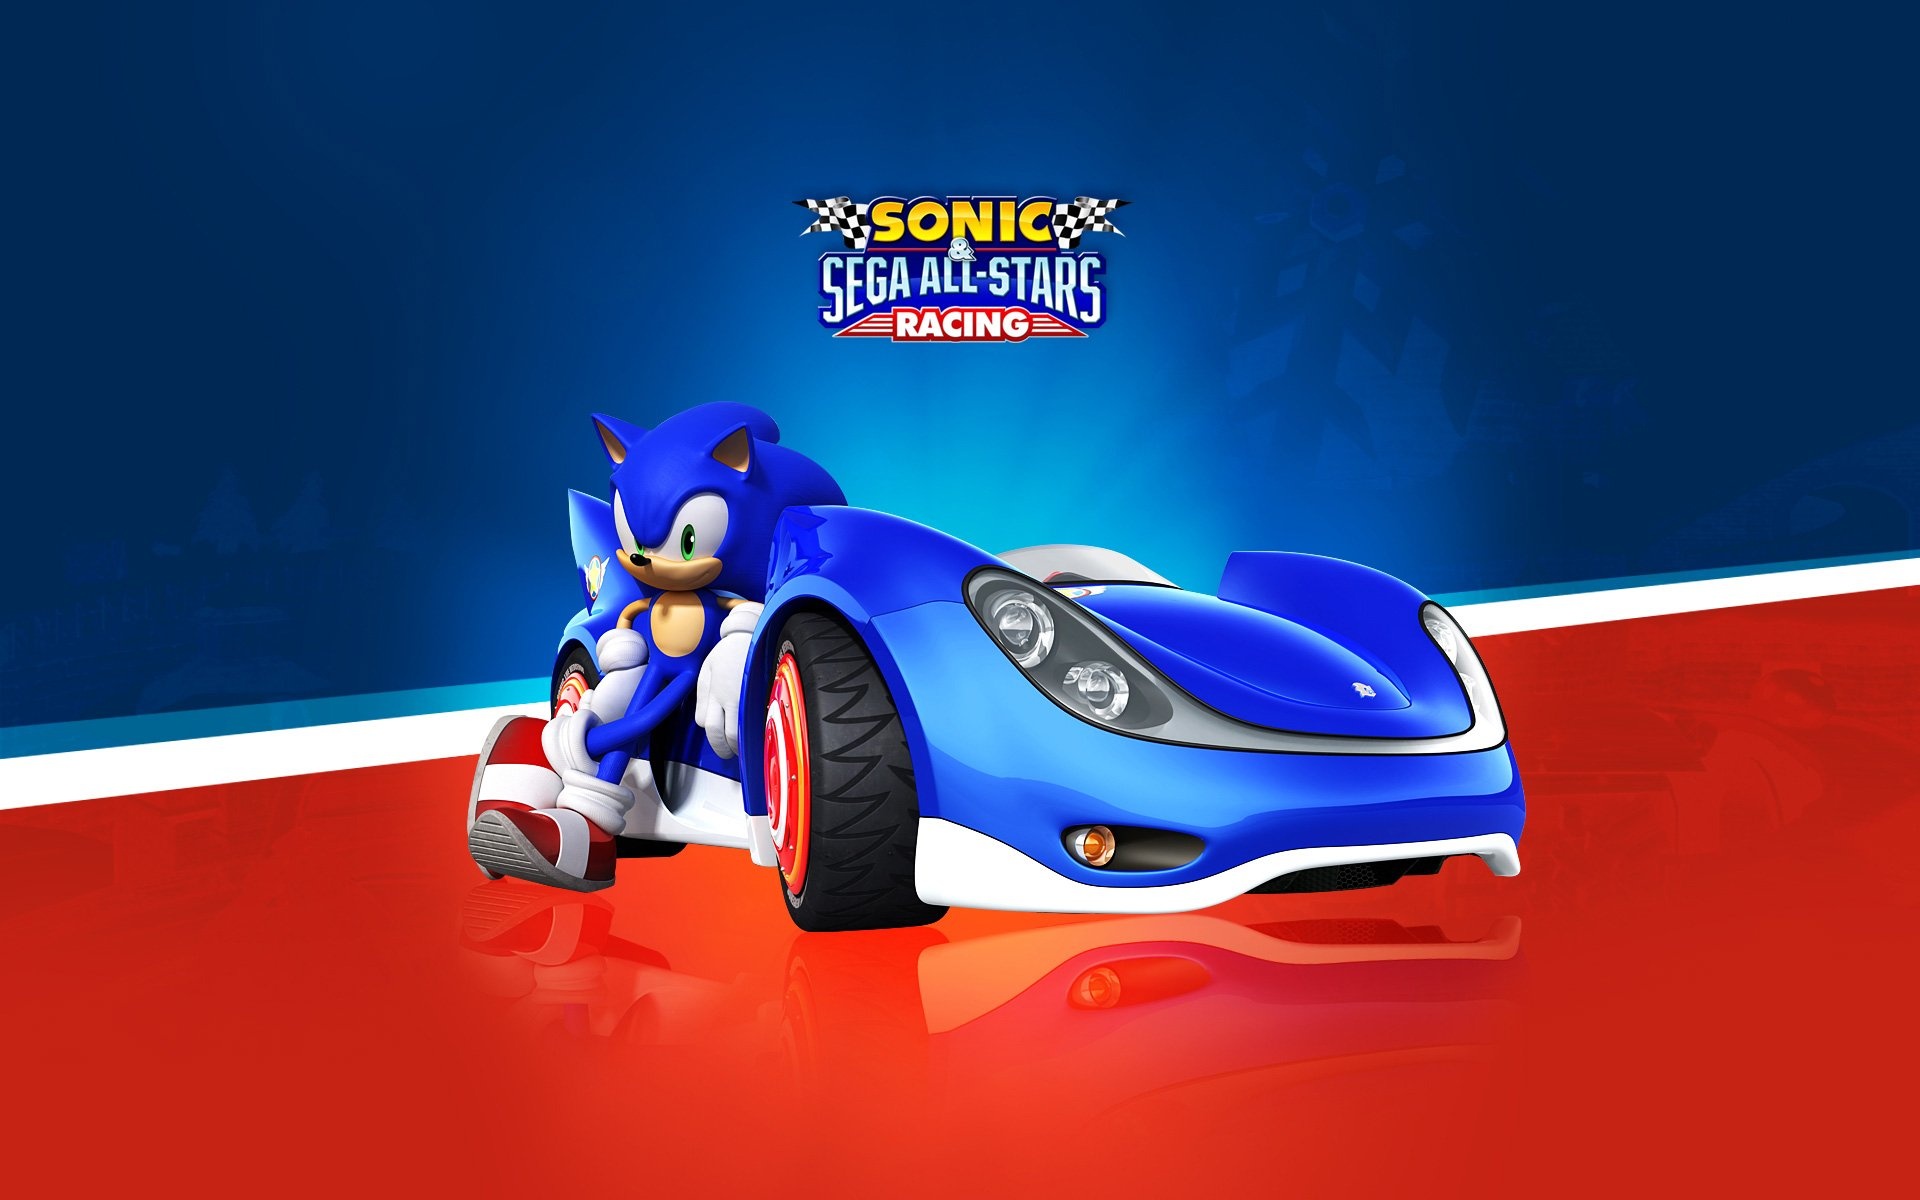 Sonic & Sega All-Stars Racing, Racing family fun, Sonic wallpaper, Sega game, 1920x1200 HD Desktop